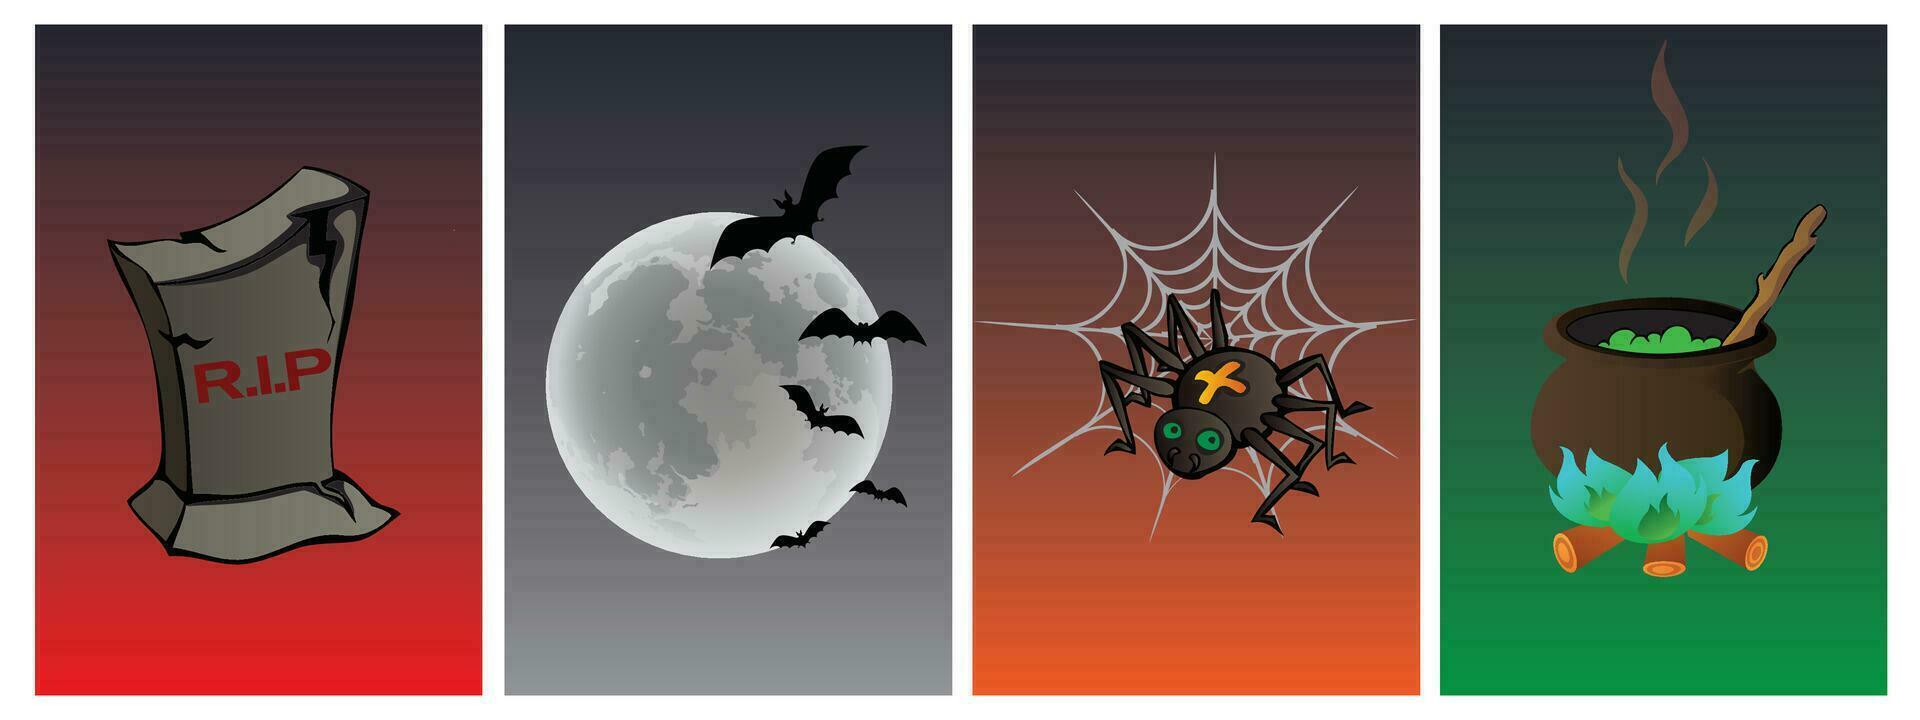 einstellen von Halloween Objekte, Grabstein, Kessel, Spinne, Mond. Halloween Objekt Symbol. vektor